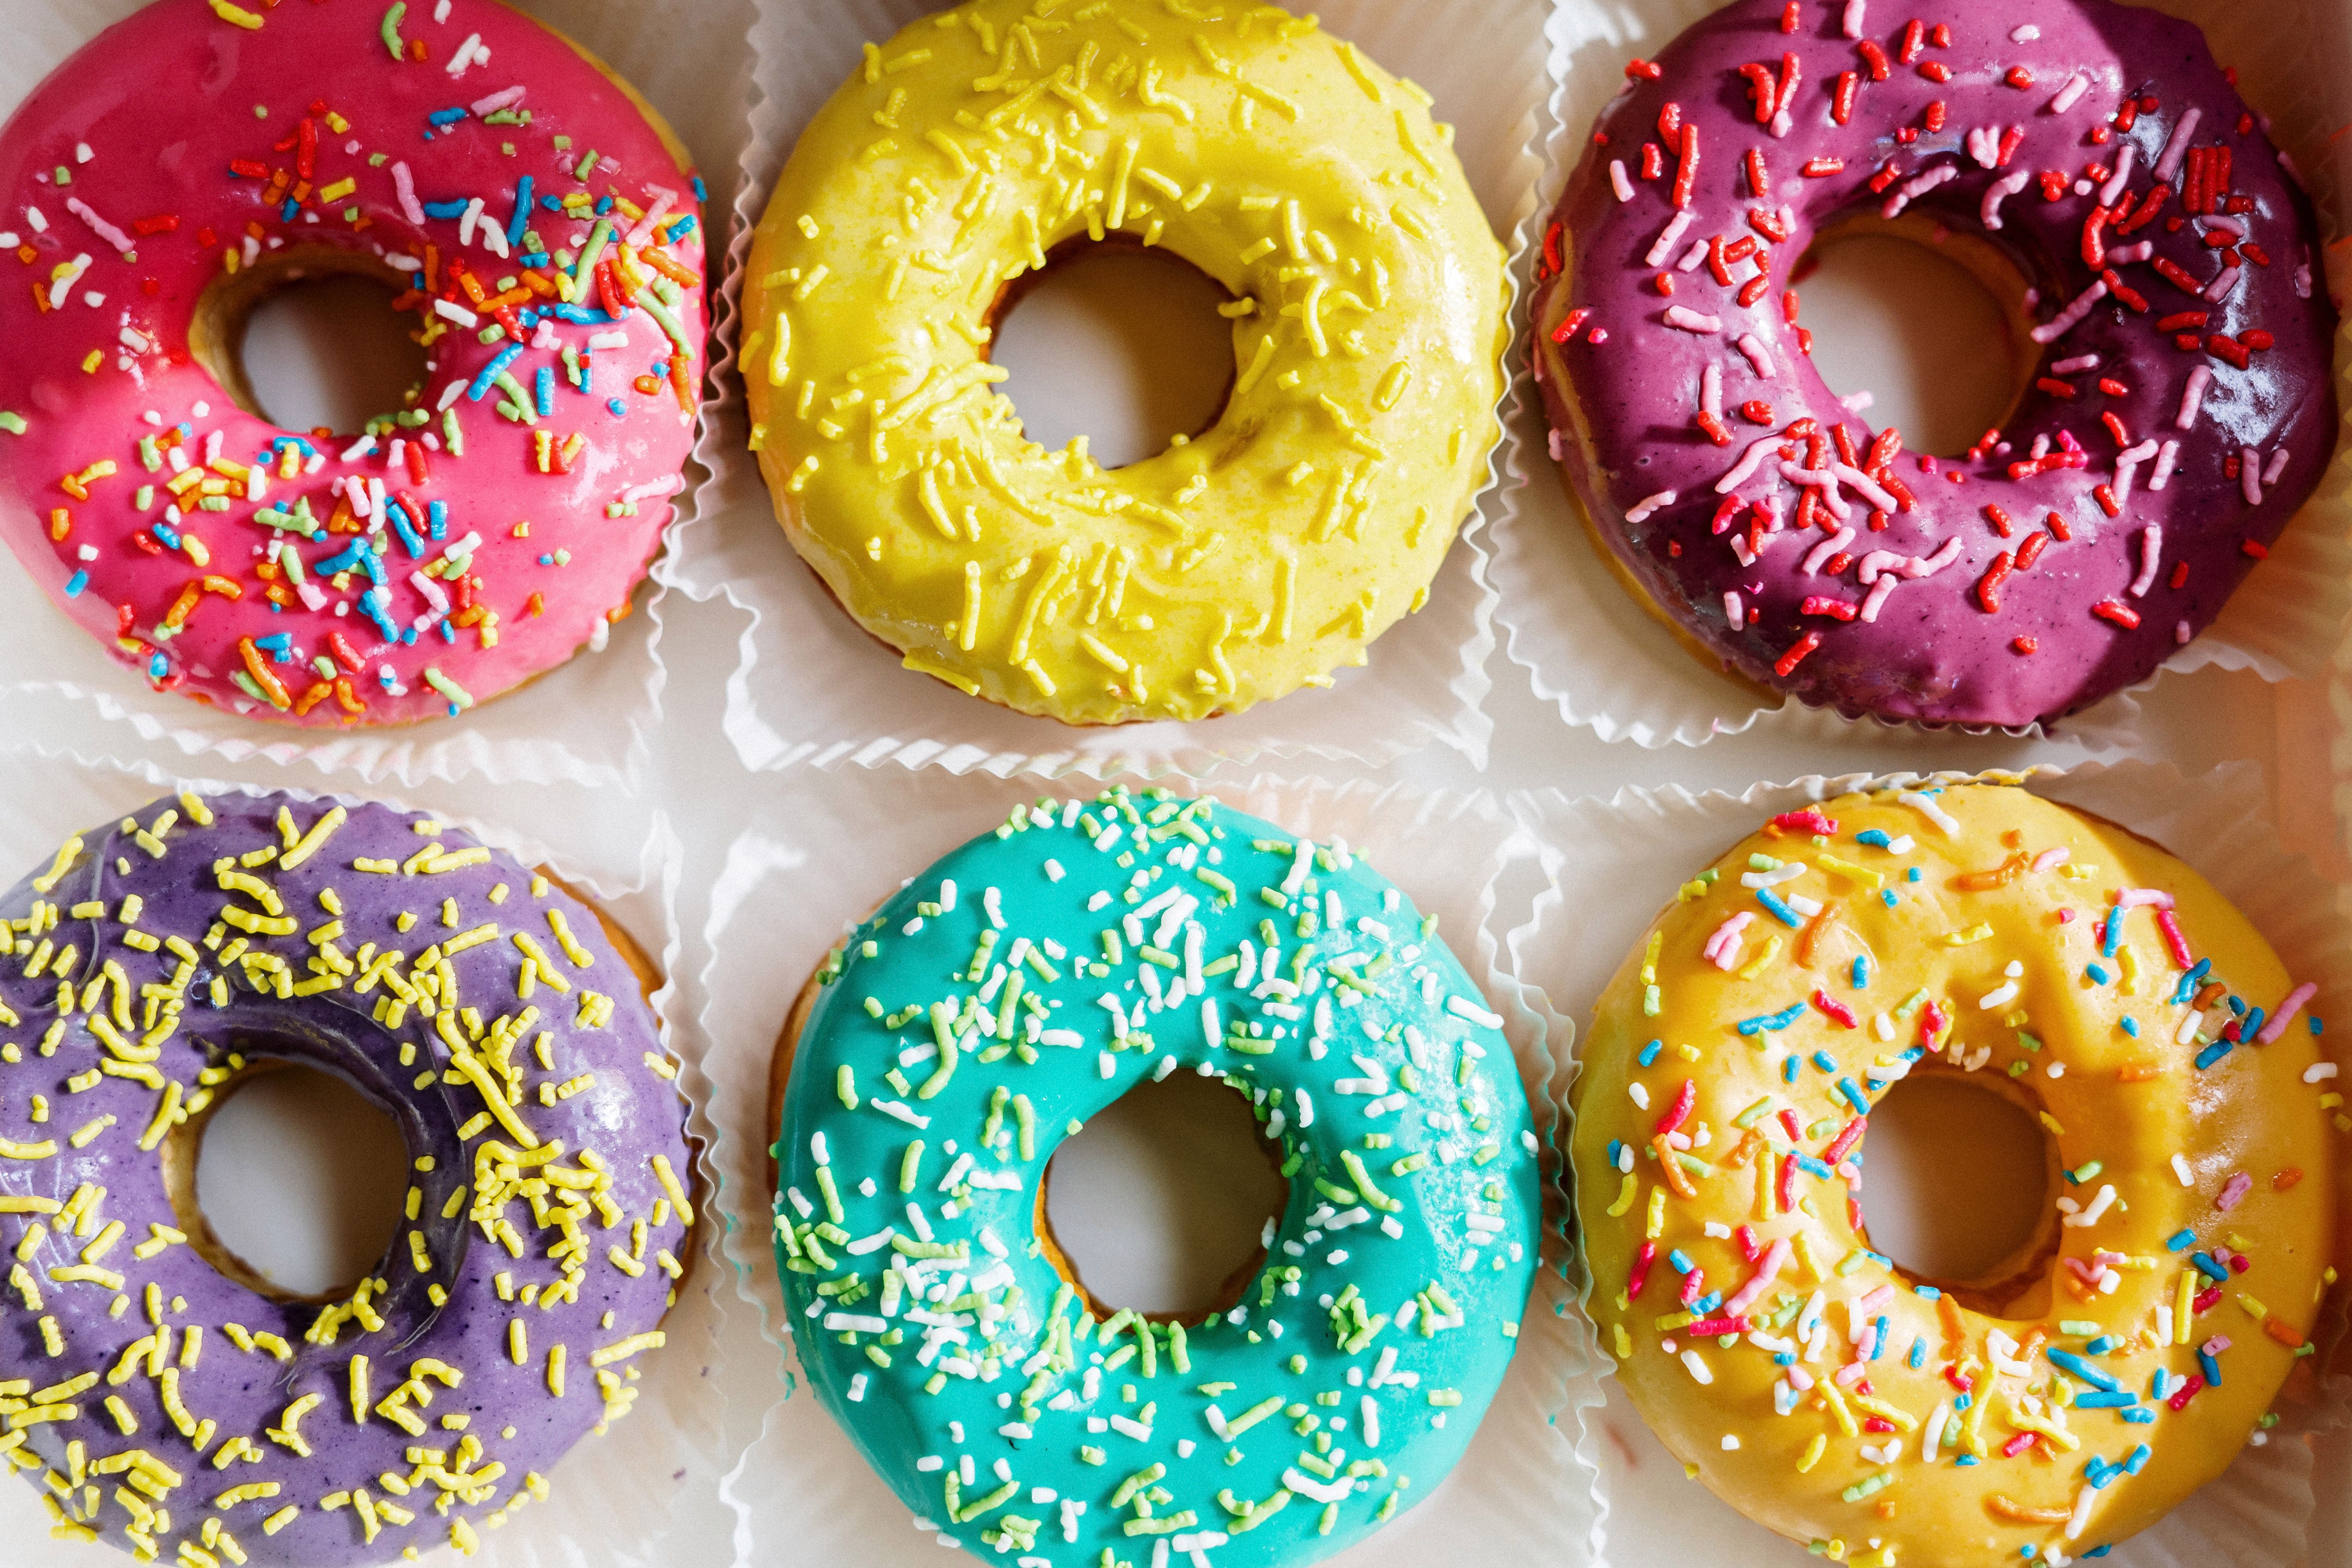 10 ways to reduce your sugar intake